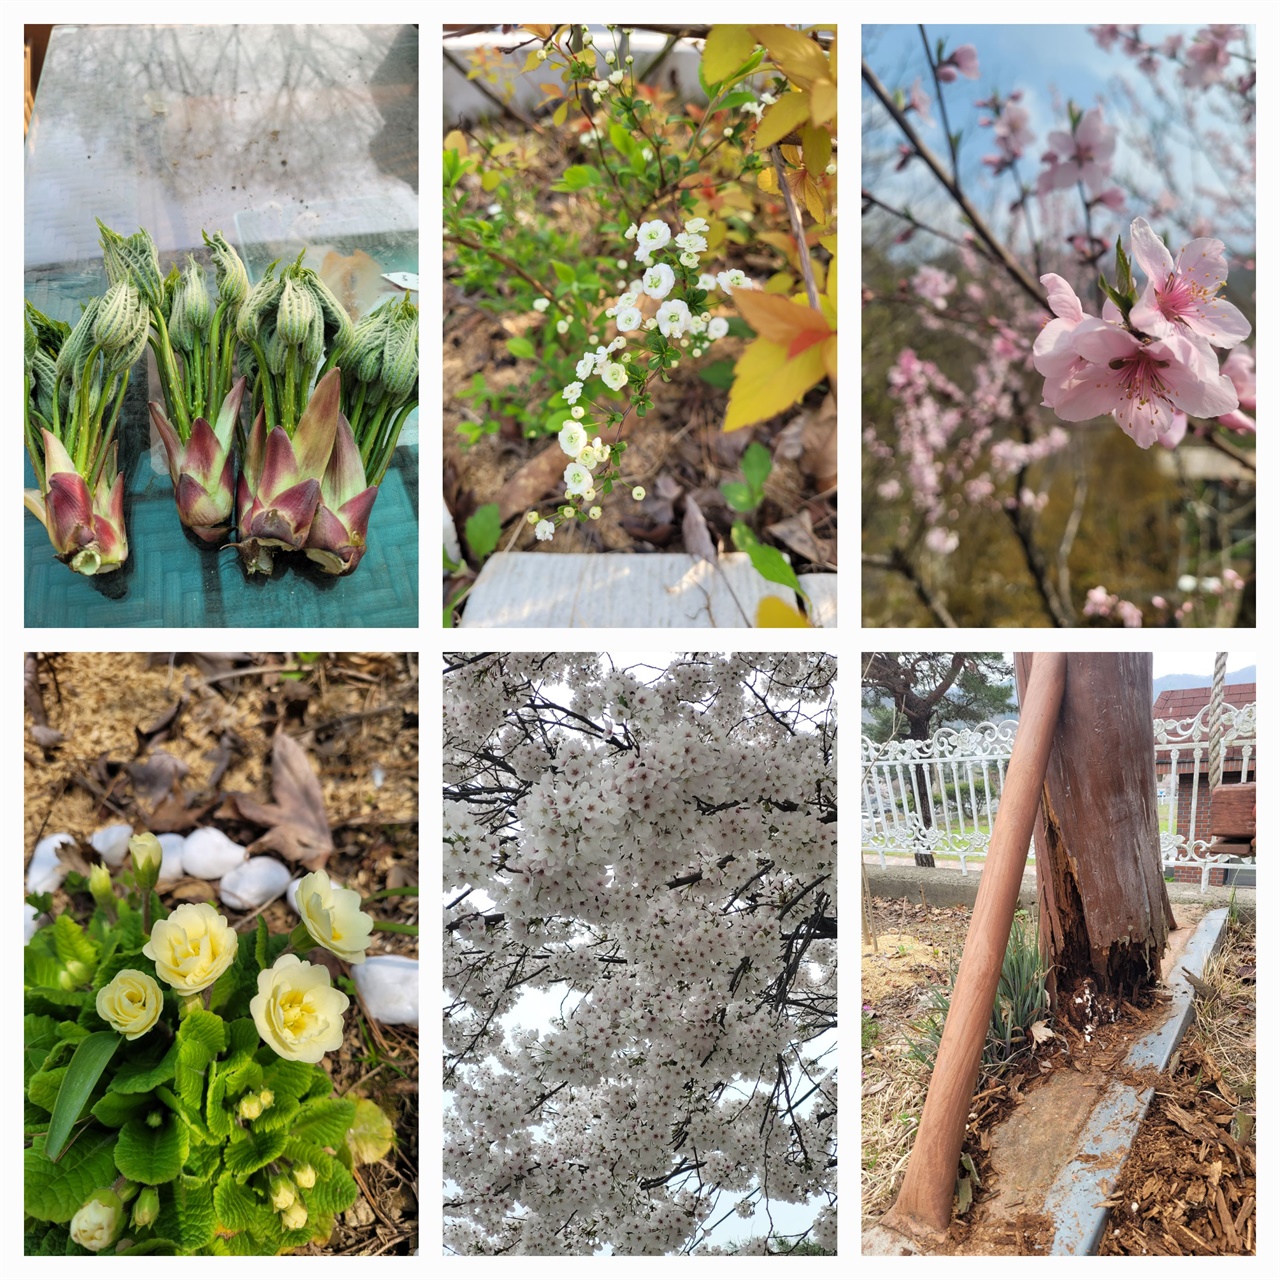 엄나무순, 장미조팝, 복사꽃, 썩은 그네 기둥, 벚꽃, 흰장미앵초